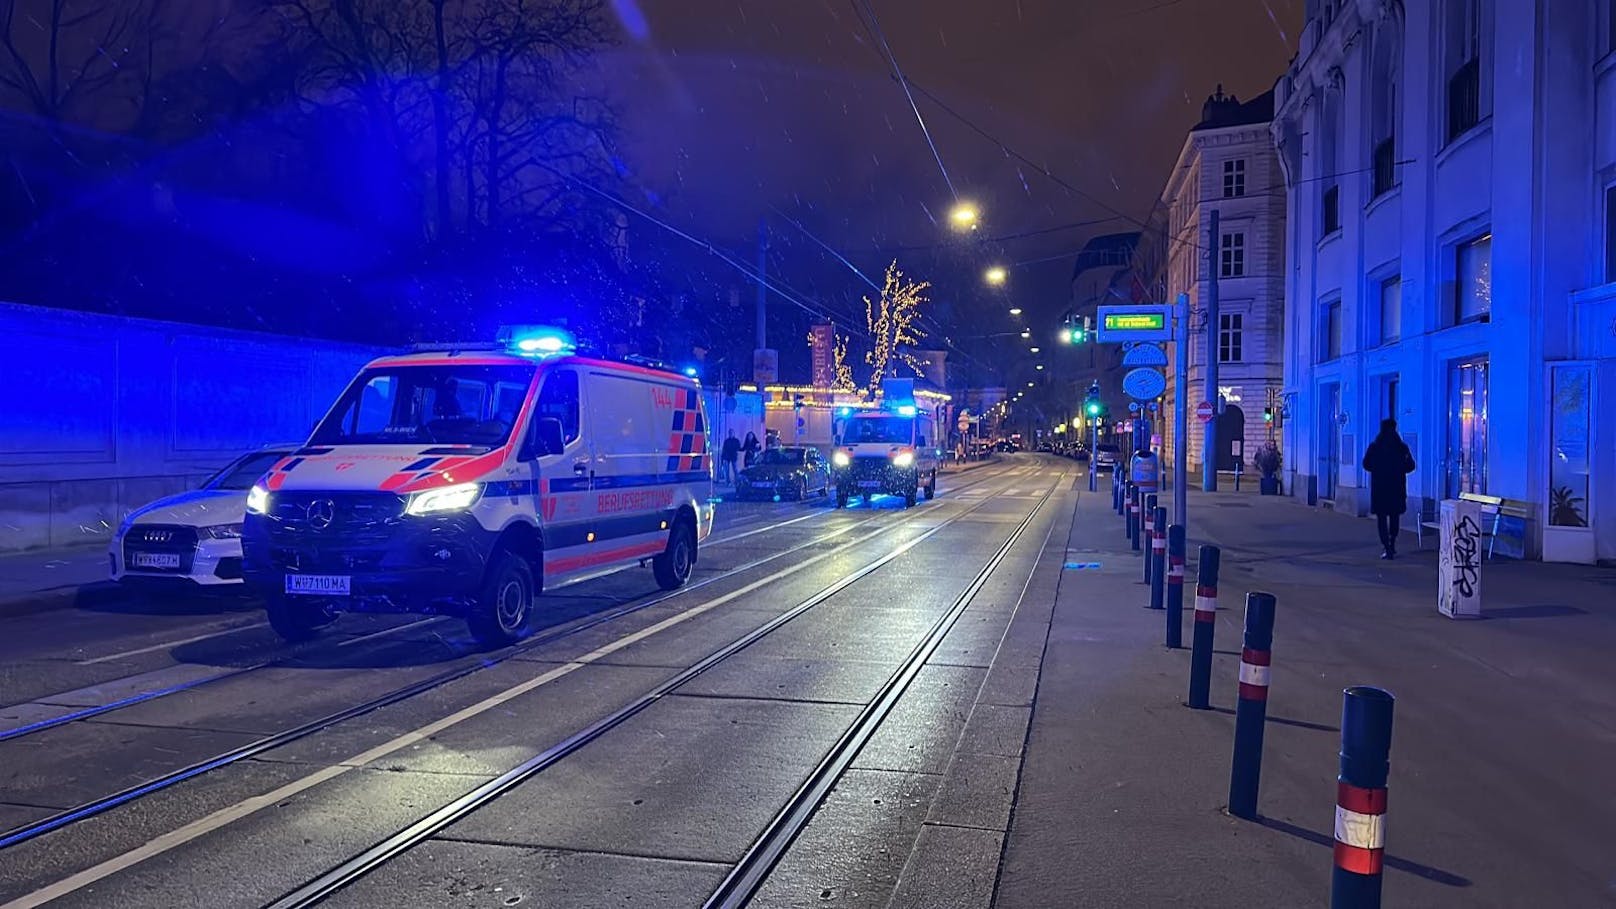 Eltern stritten, dann stürzte Bub (4) aus Fenster in Wien